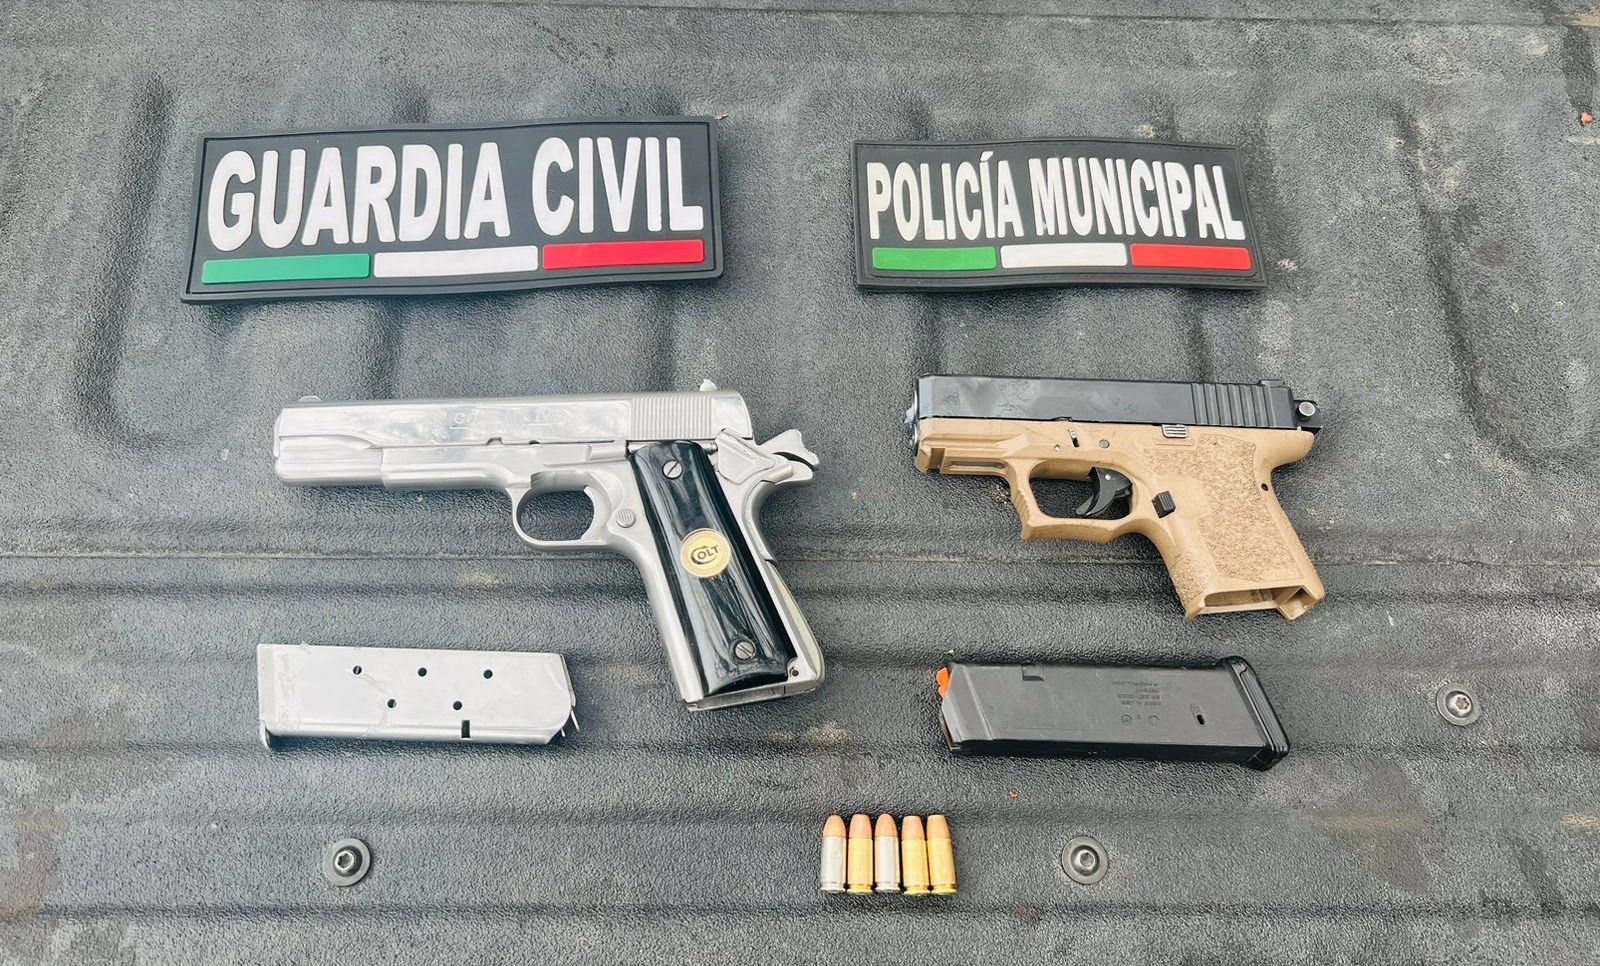 En Blindaje Zamora: SSP y Policía Municipal aseguran a dos en posesión de armas de fuego